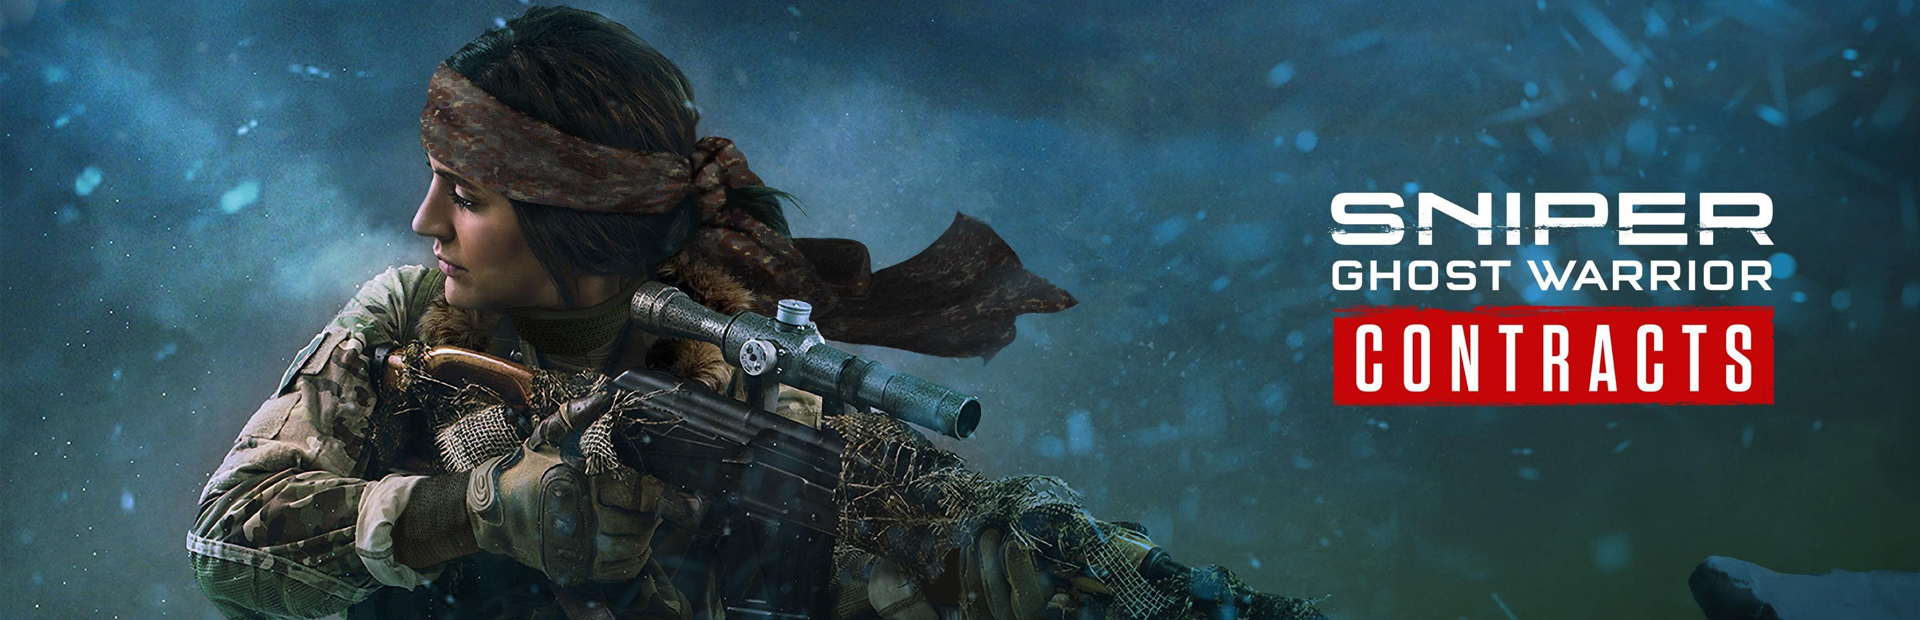 دانلود بازی Sniper Ghost Warrior Contracts 2 برای پی سی | گیمباتو